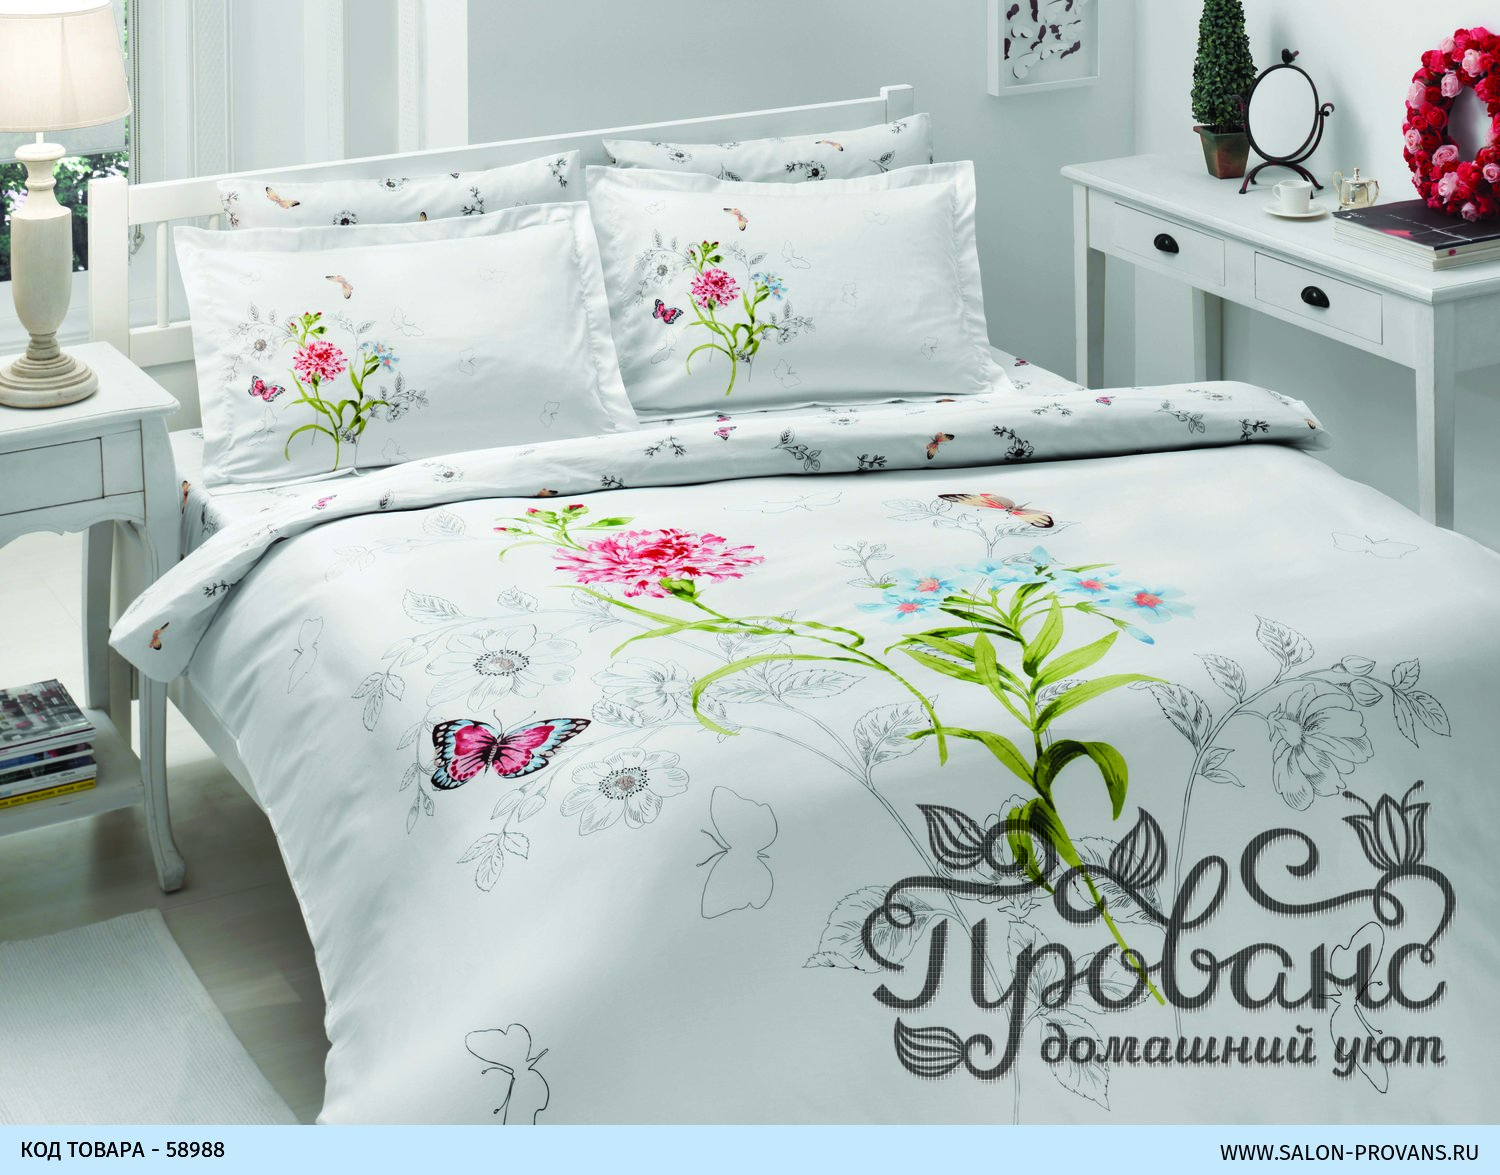 Турецкое постельное купить в москве